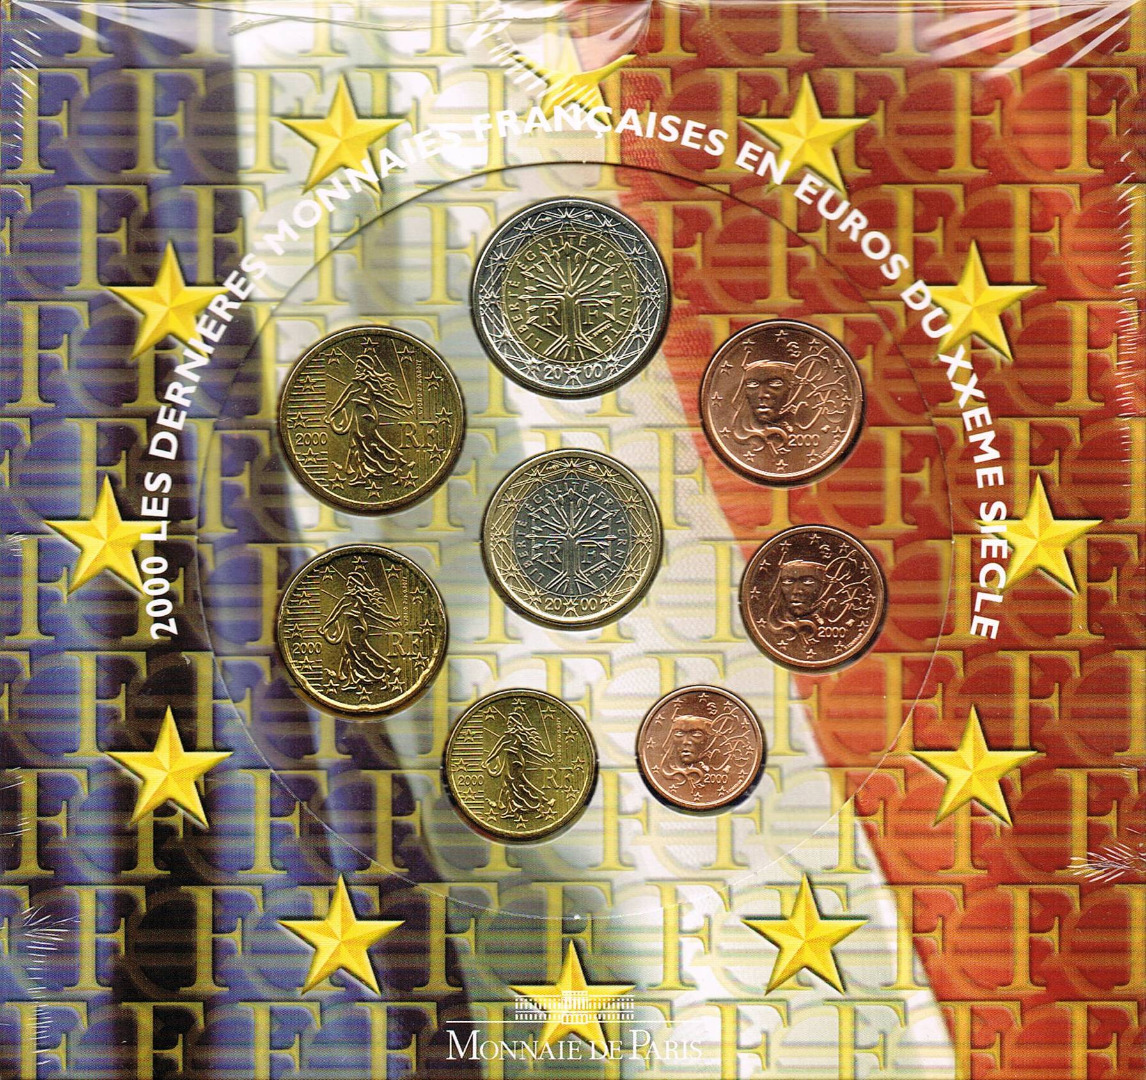 Frankreich Euro Münzen Kursmünzensatz 2000 Euro Muenzentv Der